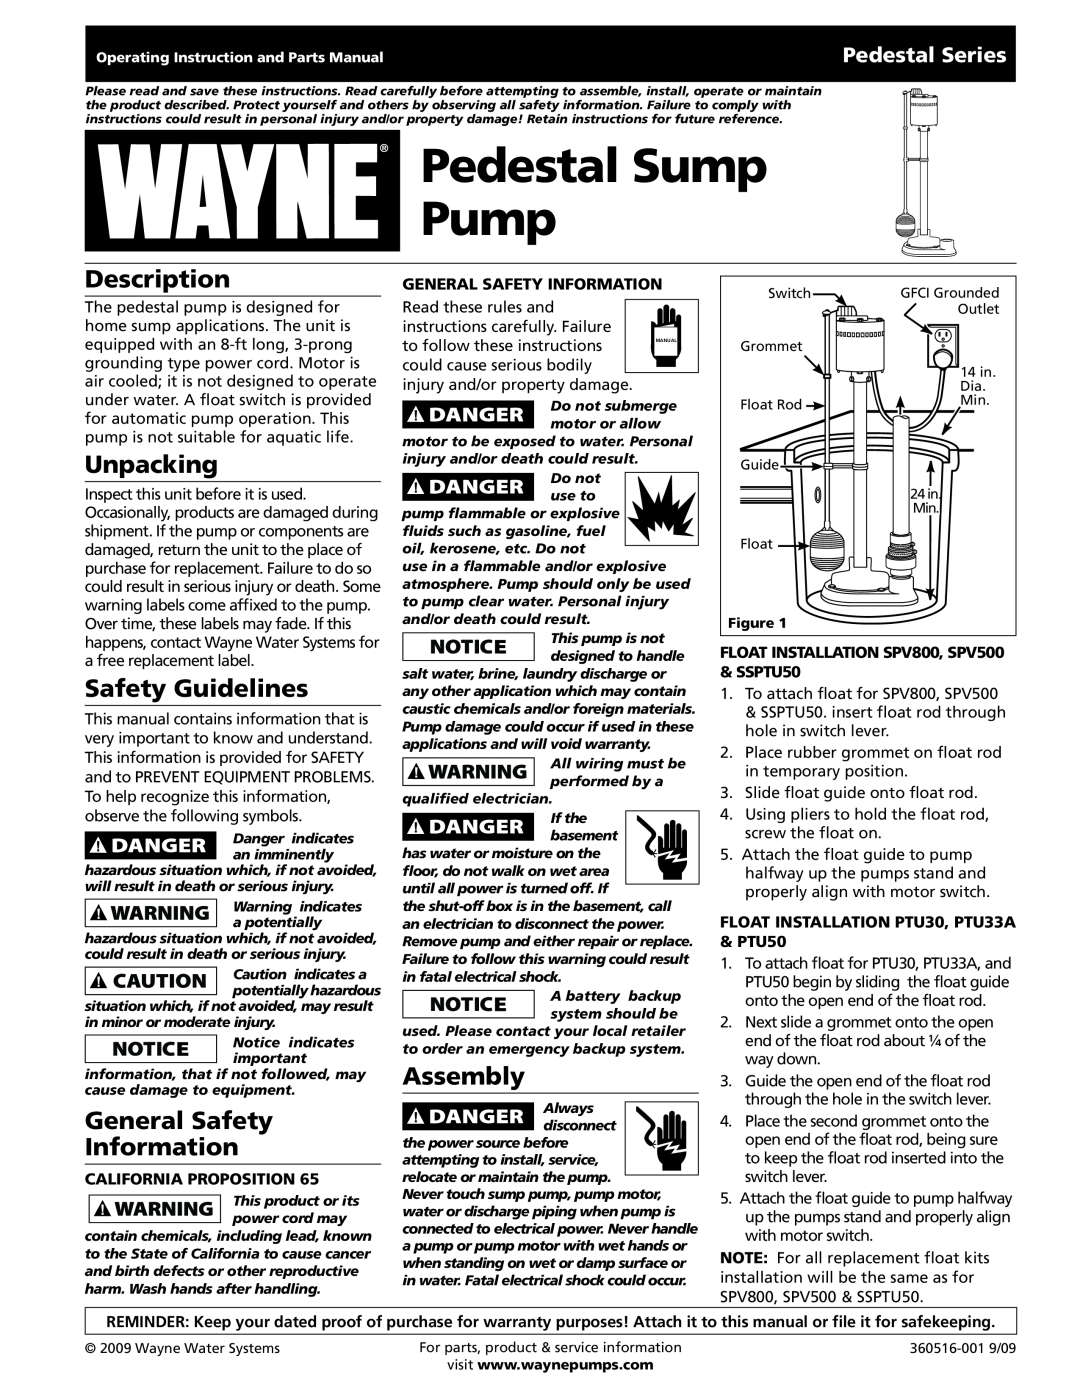 Wayne SSPTU50 warranty Description, Unpacking, Safety Guidelines, General Safety Information, Assembly, Pedestal Series 